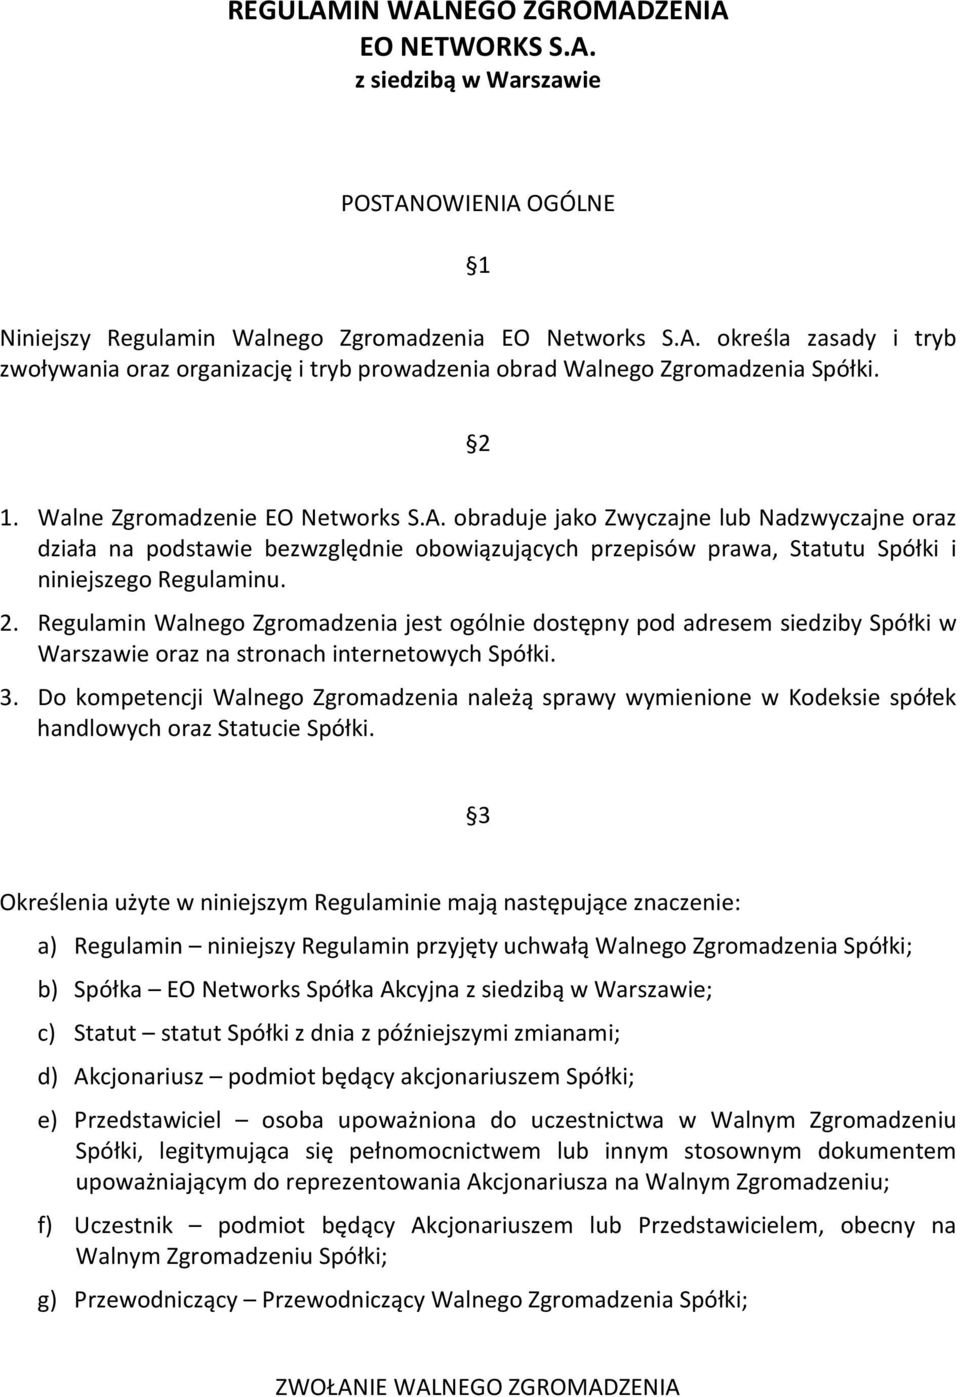 Regulamin Walnego Zgromadzenia jest ogólnie dostępny pod adresem siedziby Spółki w Warszawie oraz na stronach internetowych Spółki. 3.